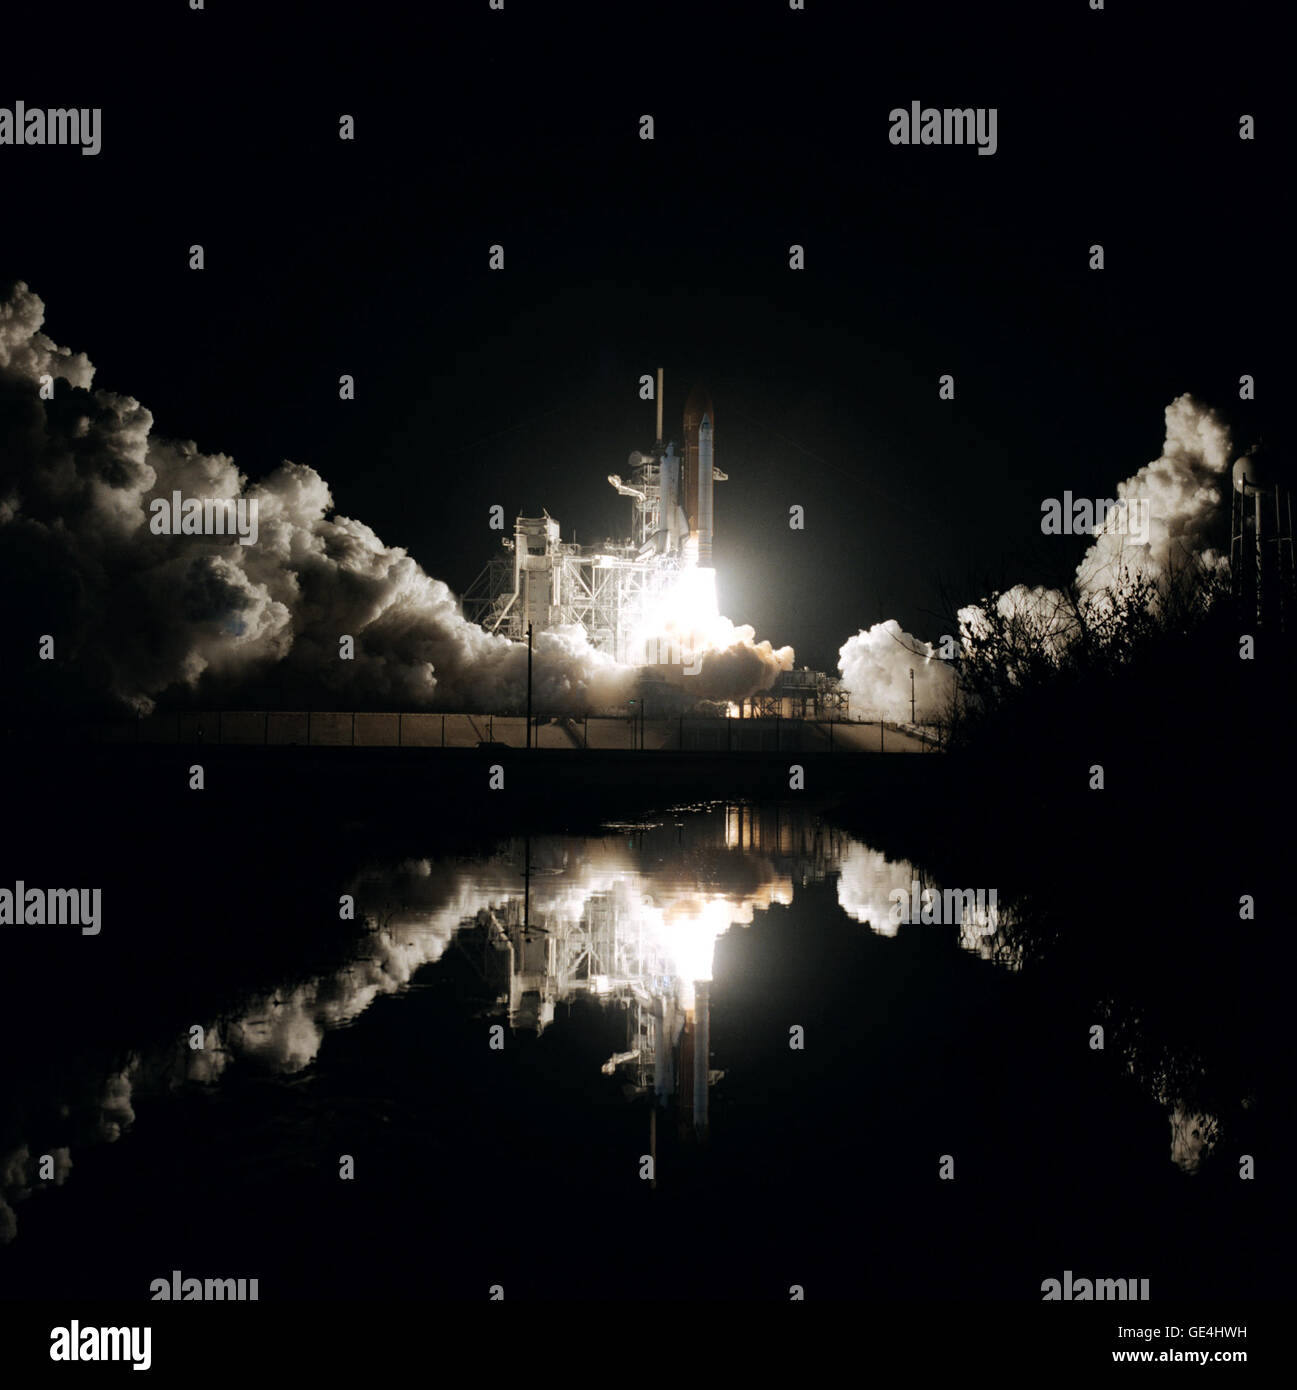 (12 gennaio 1986) il lancio della navetta spaziale Columbia's STS-61-C missione. Un riflesso della navetta può essere visto nell'acqua. Immagine # : STS61C-S-048 Foto Stock